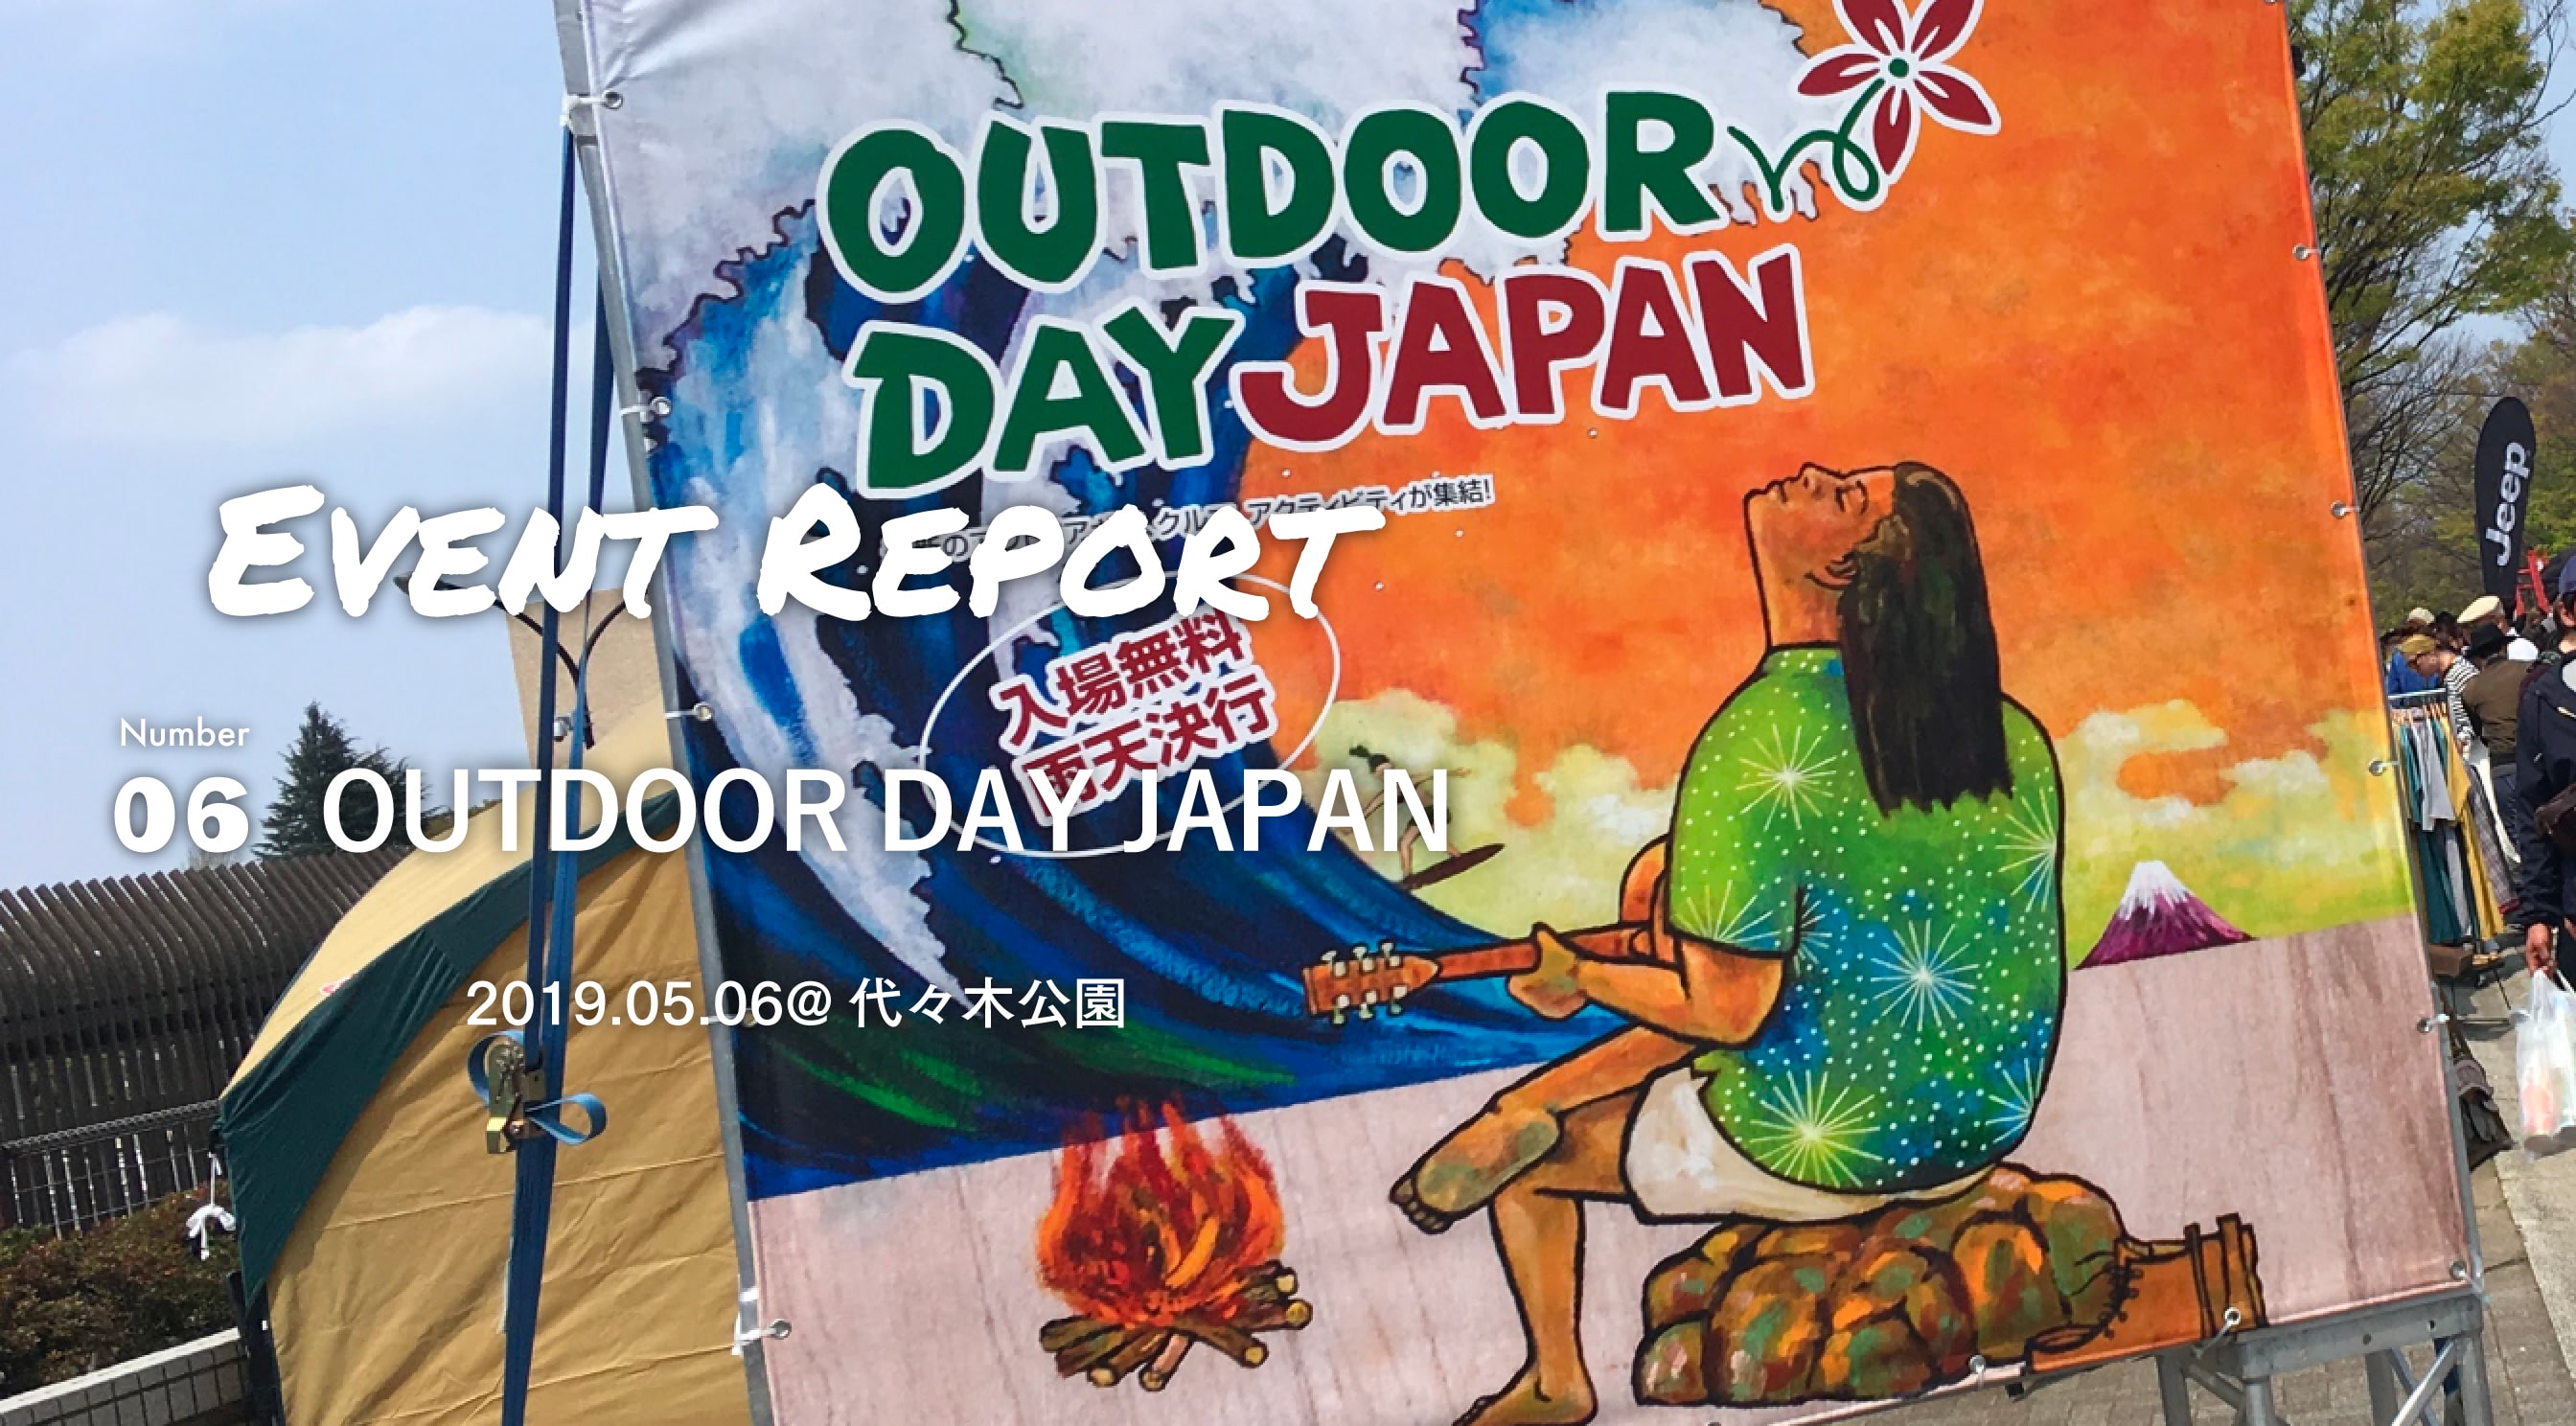 Event Report Vol.6 | OUTDOOR DAY  JAPAN 代々木公園に行ってきた話し。